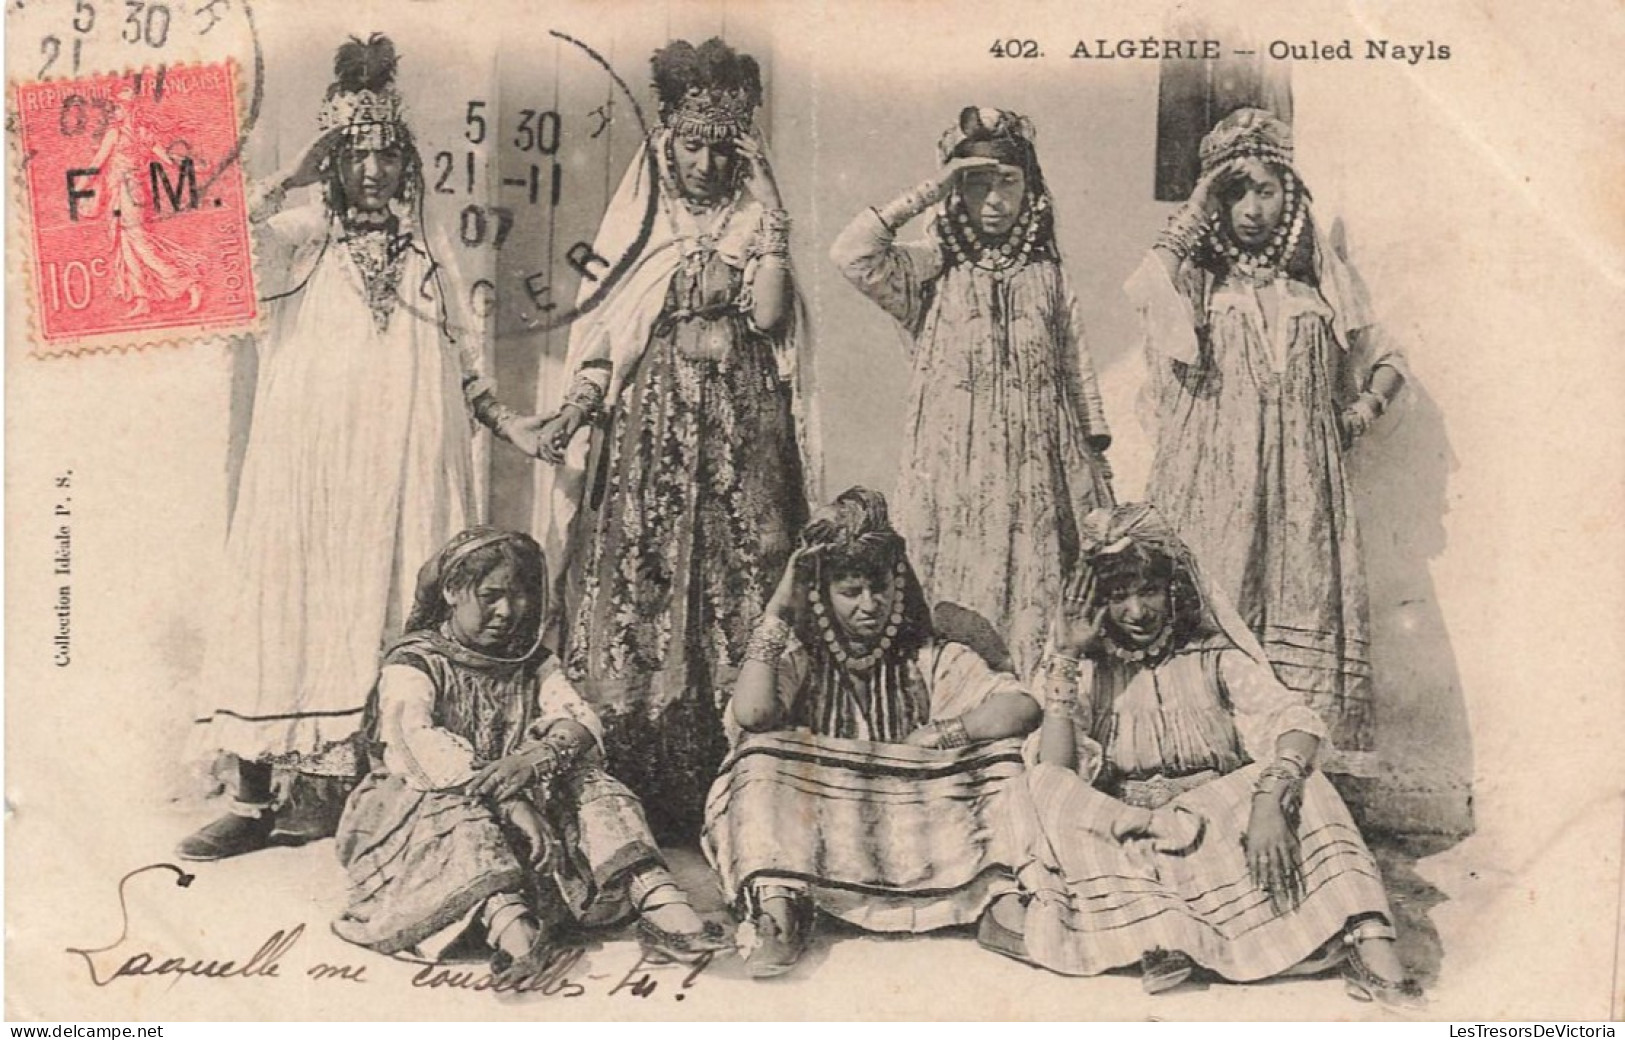 ALGERIE - Ouled Nayls - Groupe De Femmes Avec Des Habits Ornés De Bijoux - Carte Postale Ancienne - Femmes